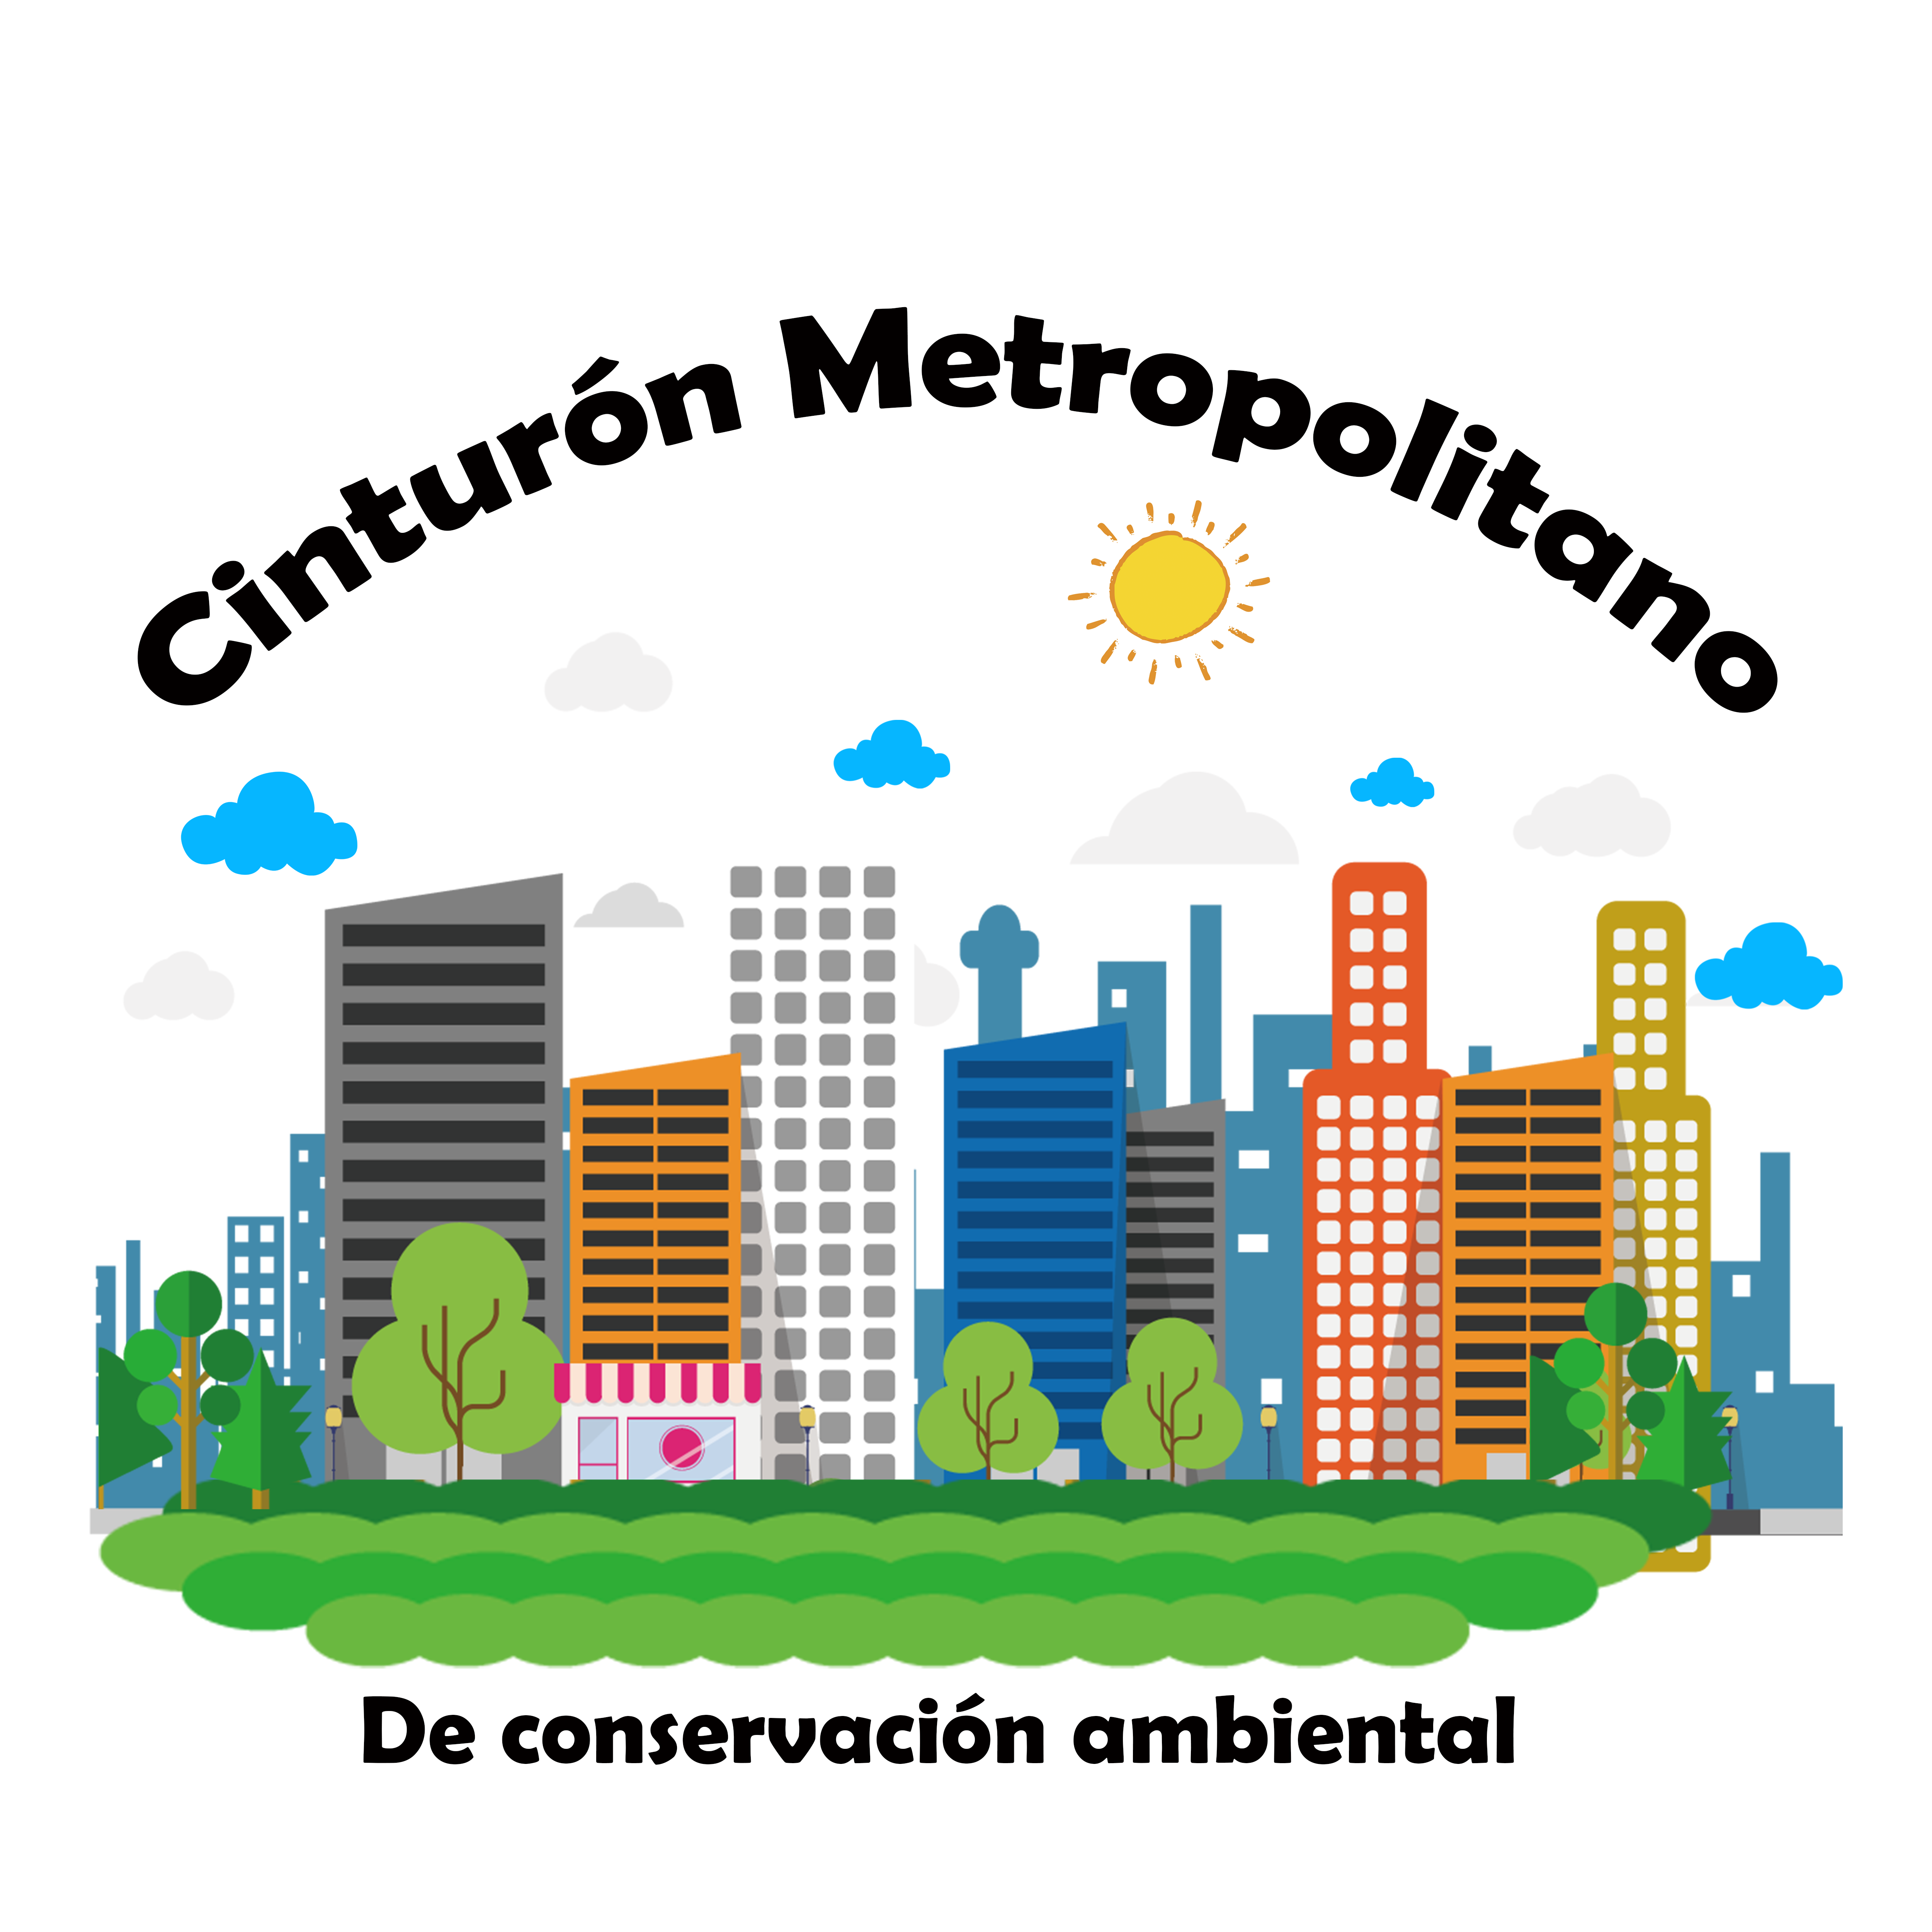 Cinturón metropolitano de conservación ambiental